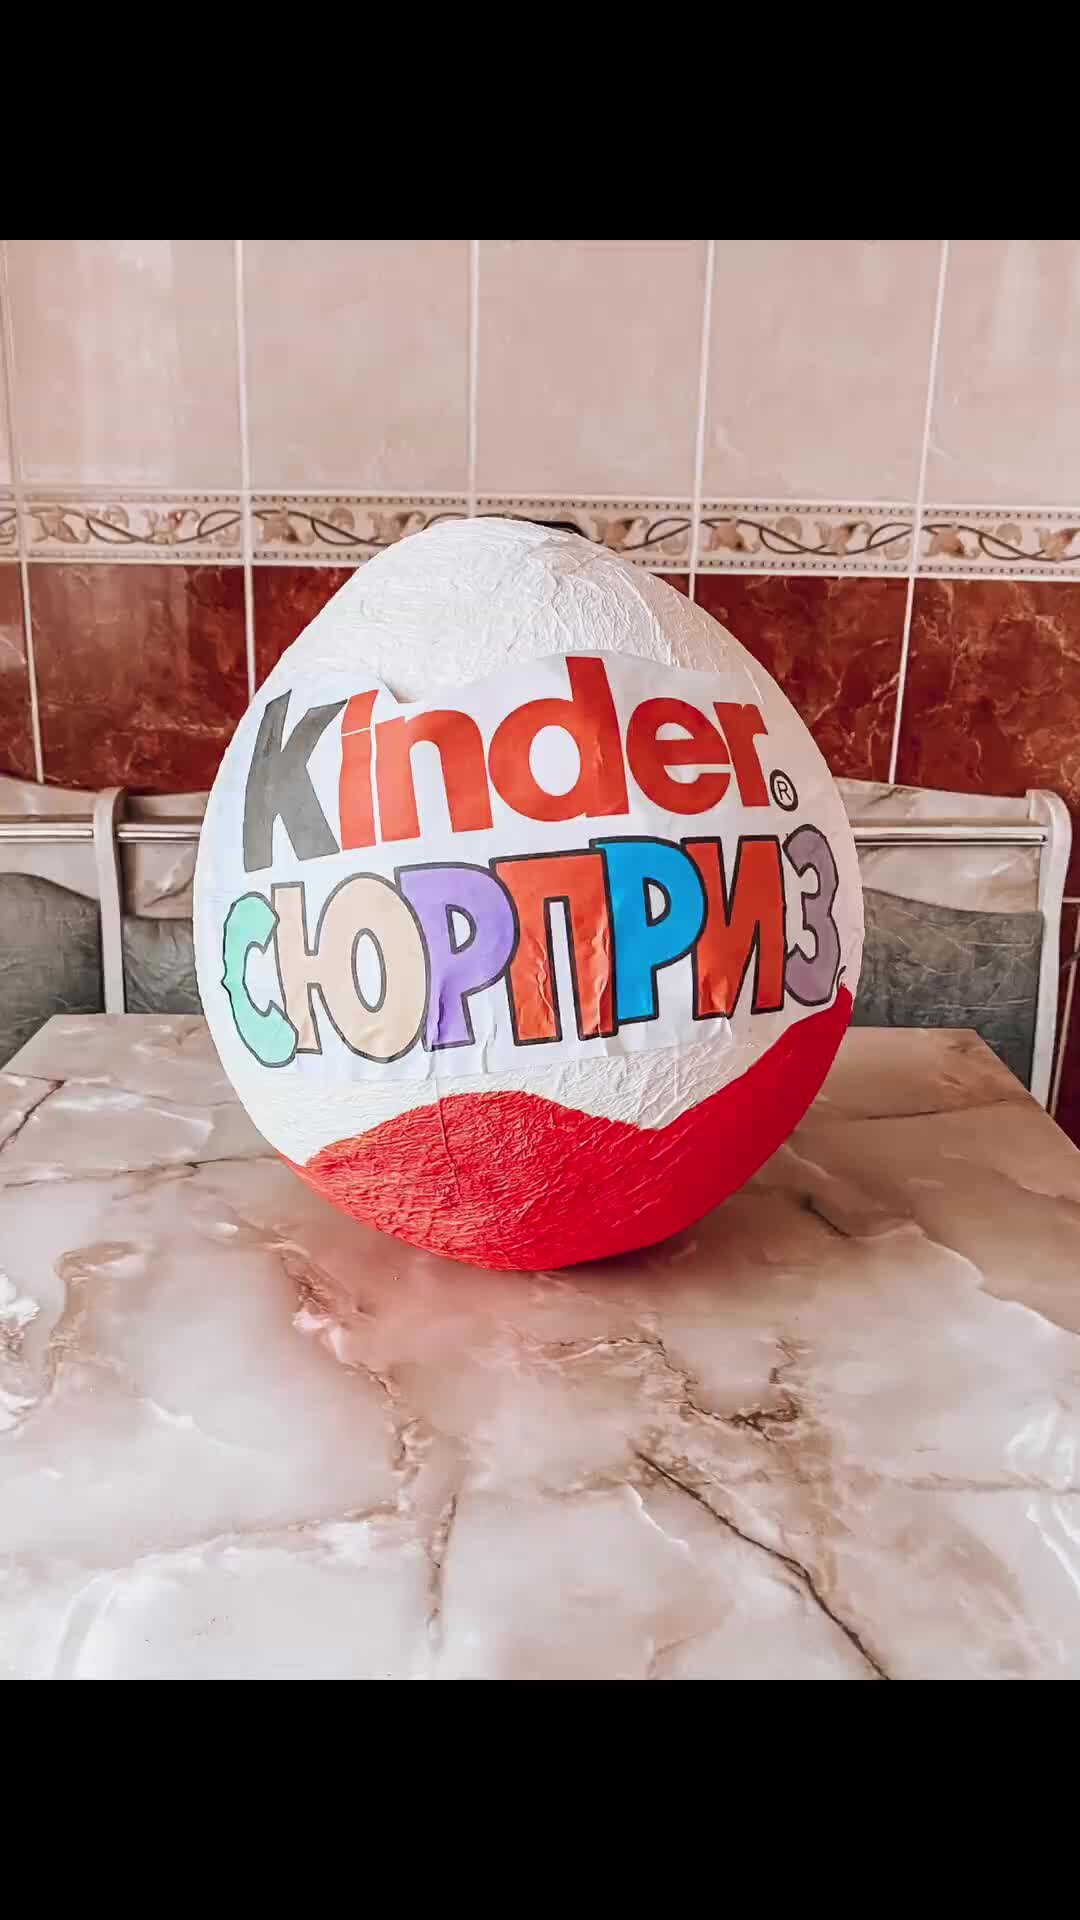 Поделки из яиц киндер сюрпризов своими руками: фото идеи детских изделий